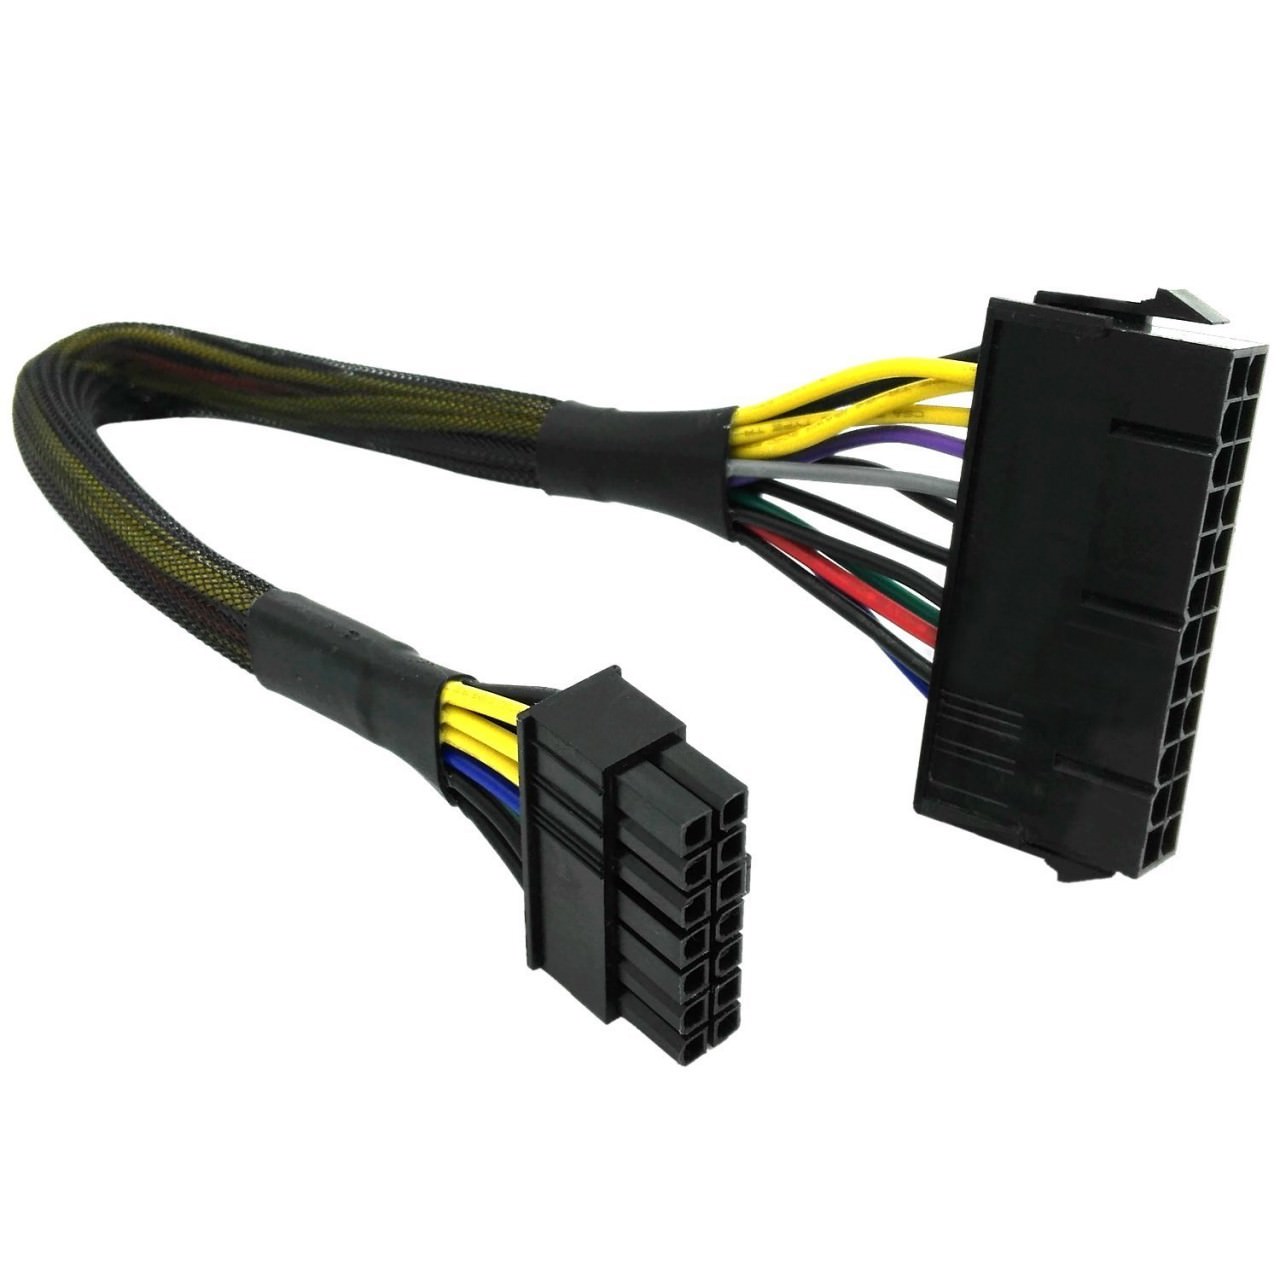 Lenovo PSU Main Power Adapter Cable (30cm) - modDIY.com